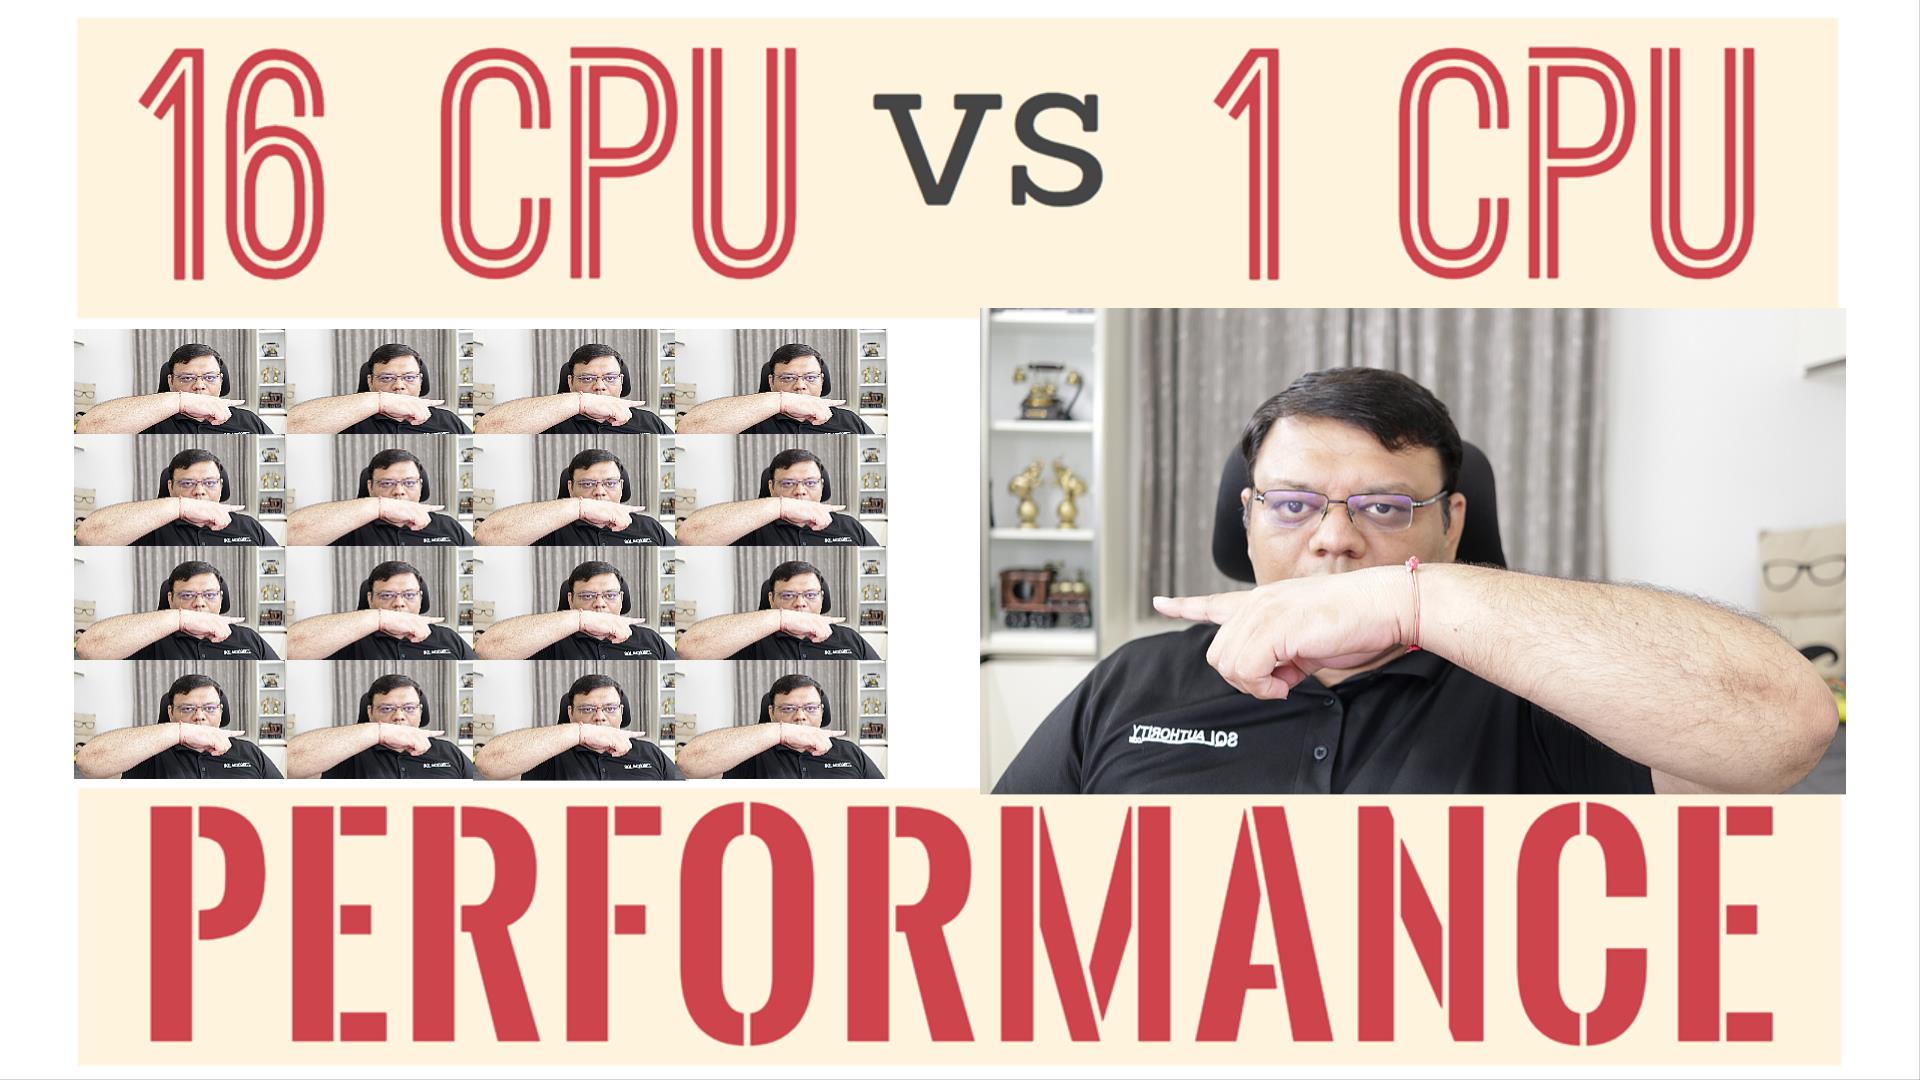 SQL SERVER  16 CPU vs 1 CPU : Performance Comparison